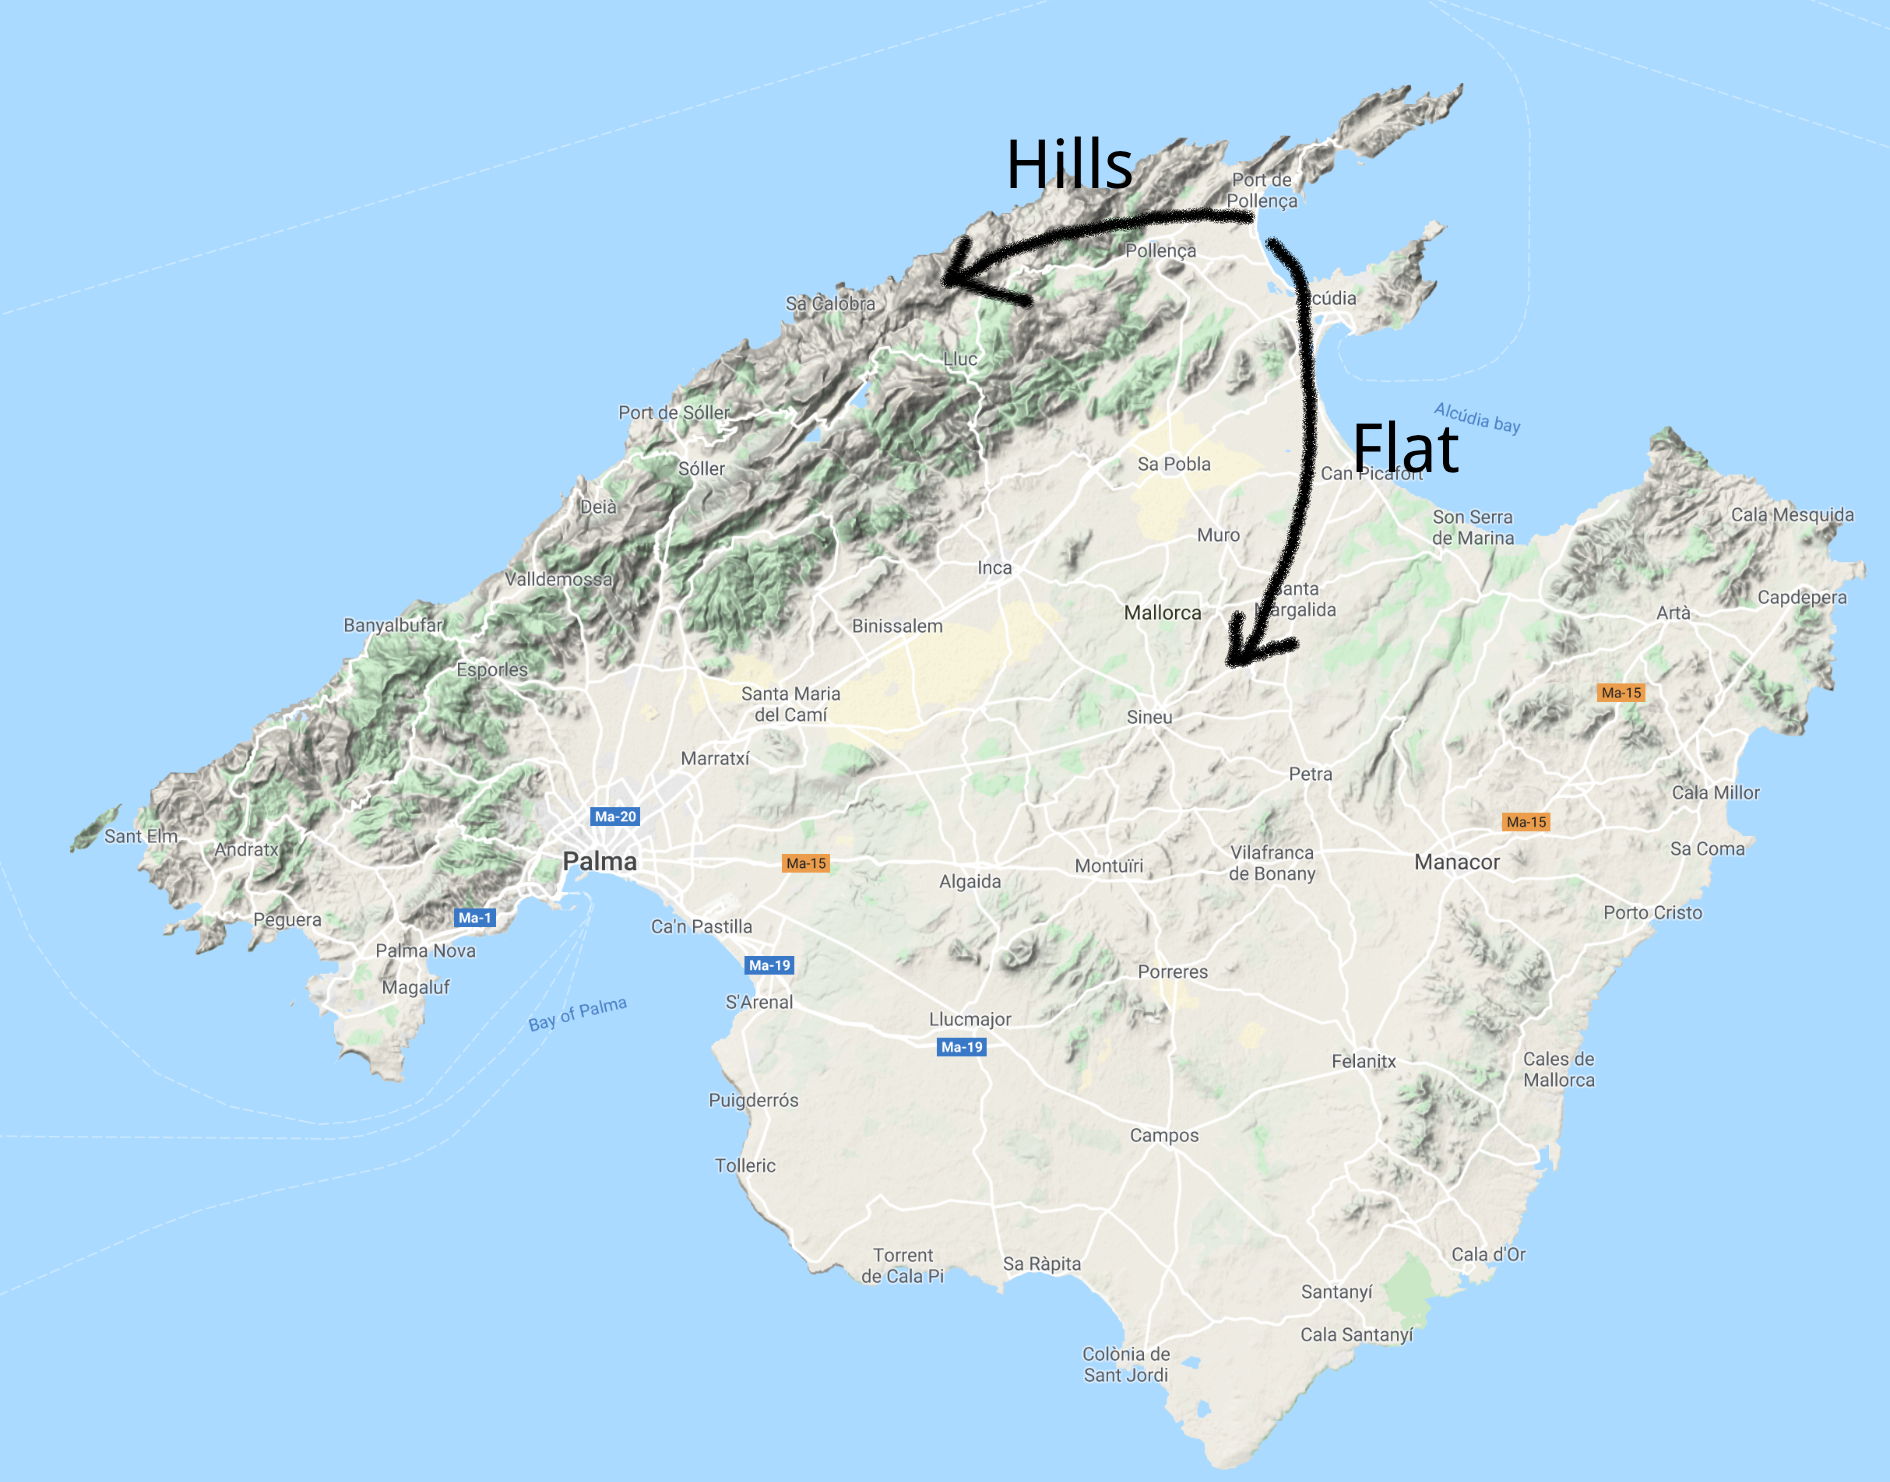 Majorca - hills or flat